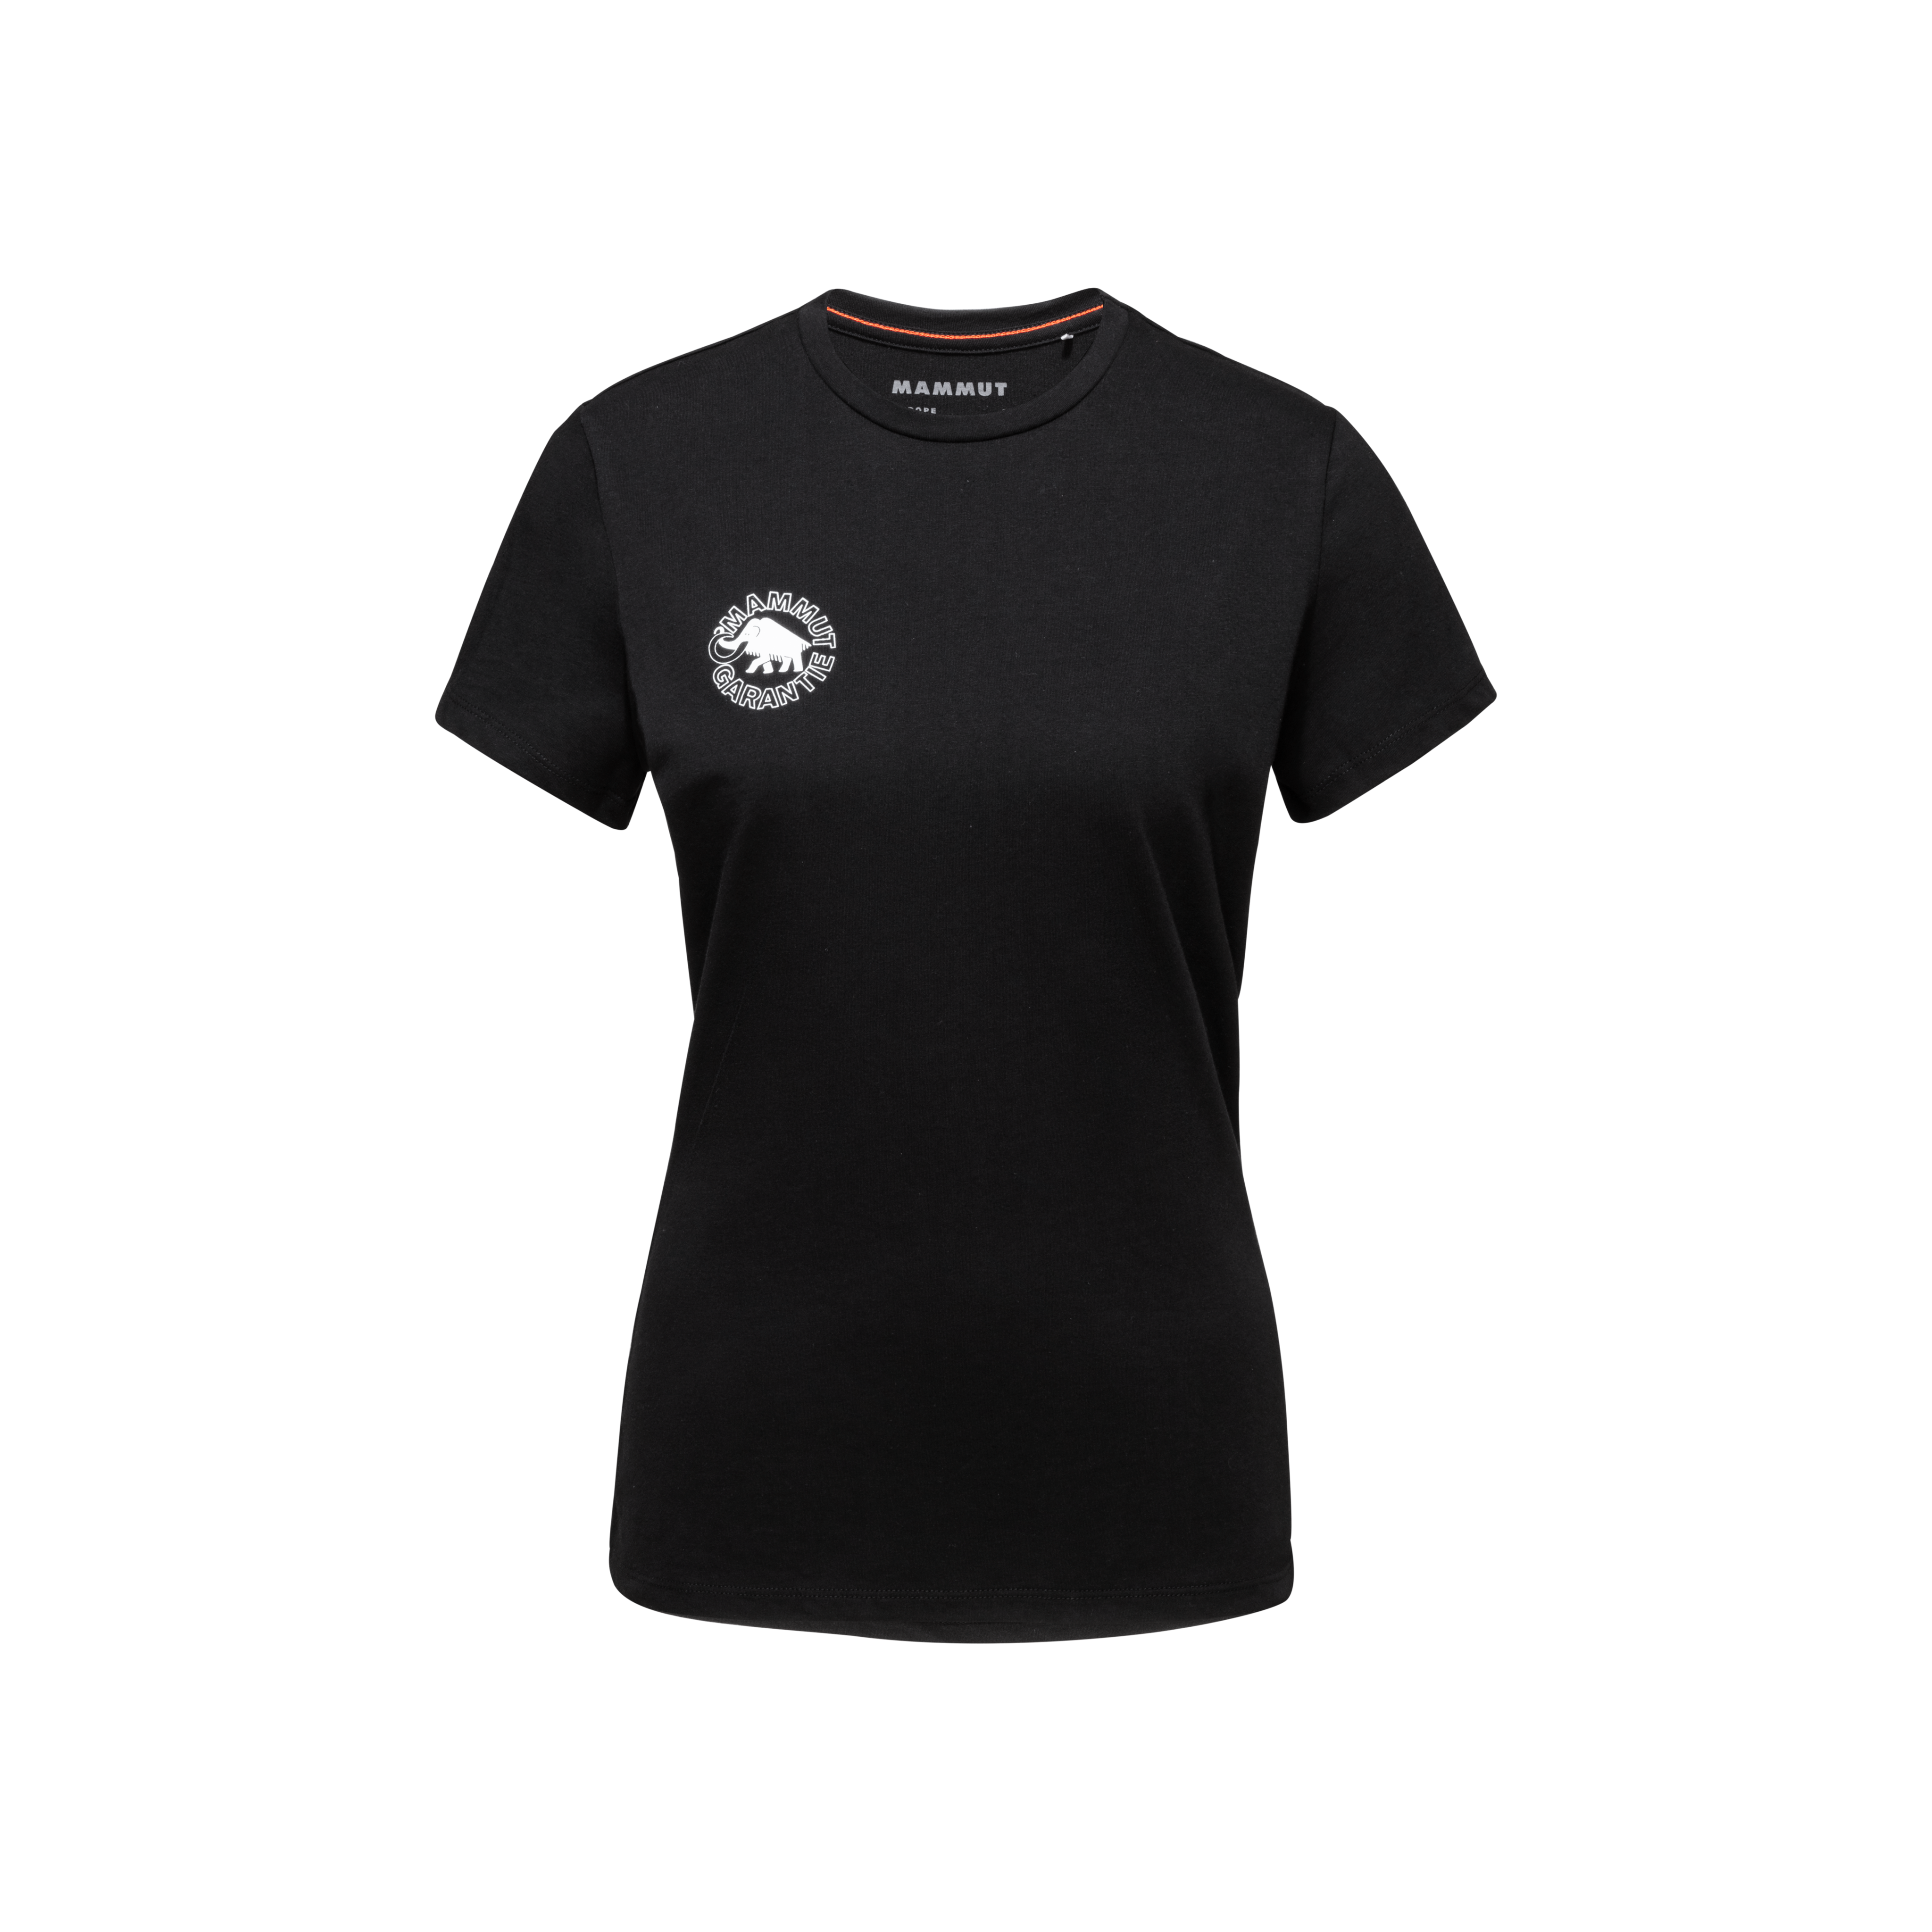 Seile T-Shirt Women Heritage - black, XL thumbnail